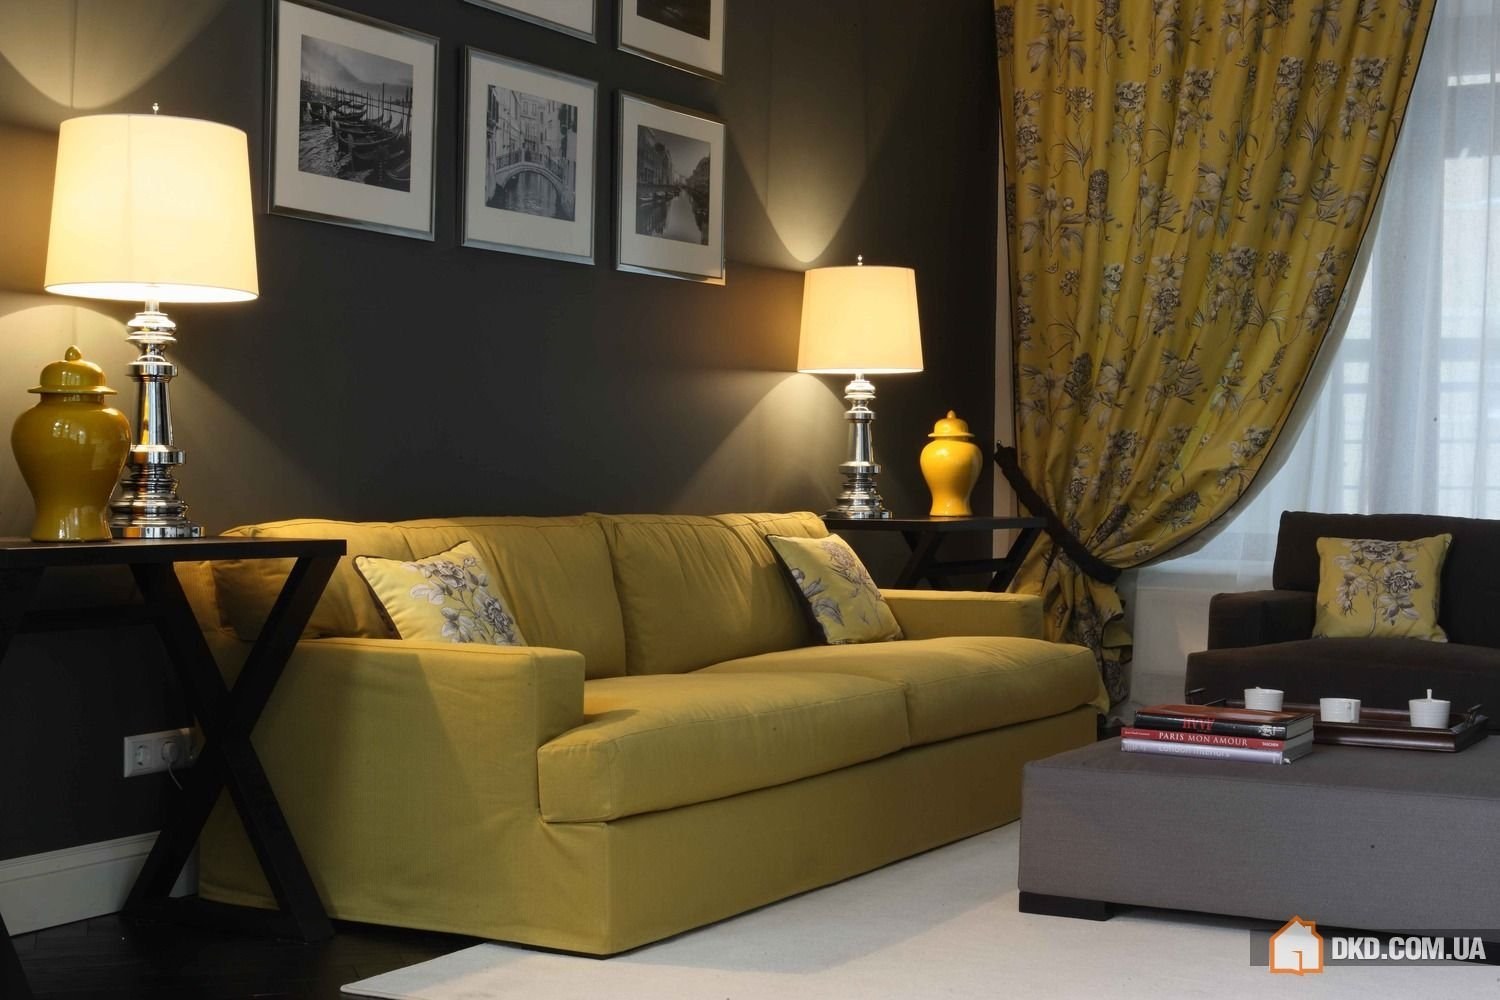 Горчичный коричневый. Желтый диван в интерьере. Желтый в интерьере гостиной. Интерьер в горчичных тонах. Интерьер в желтых тонах.